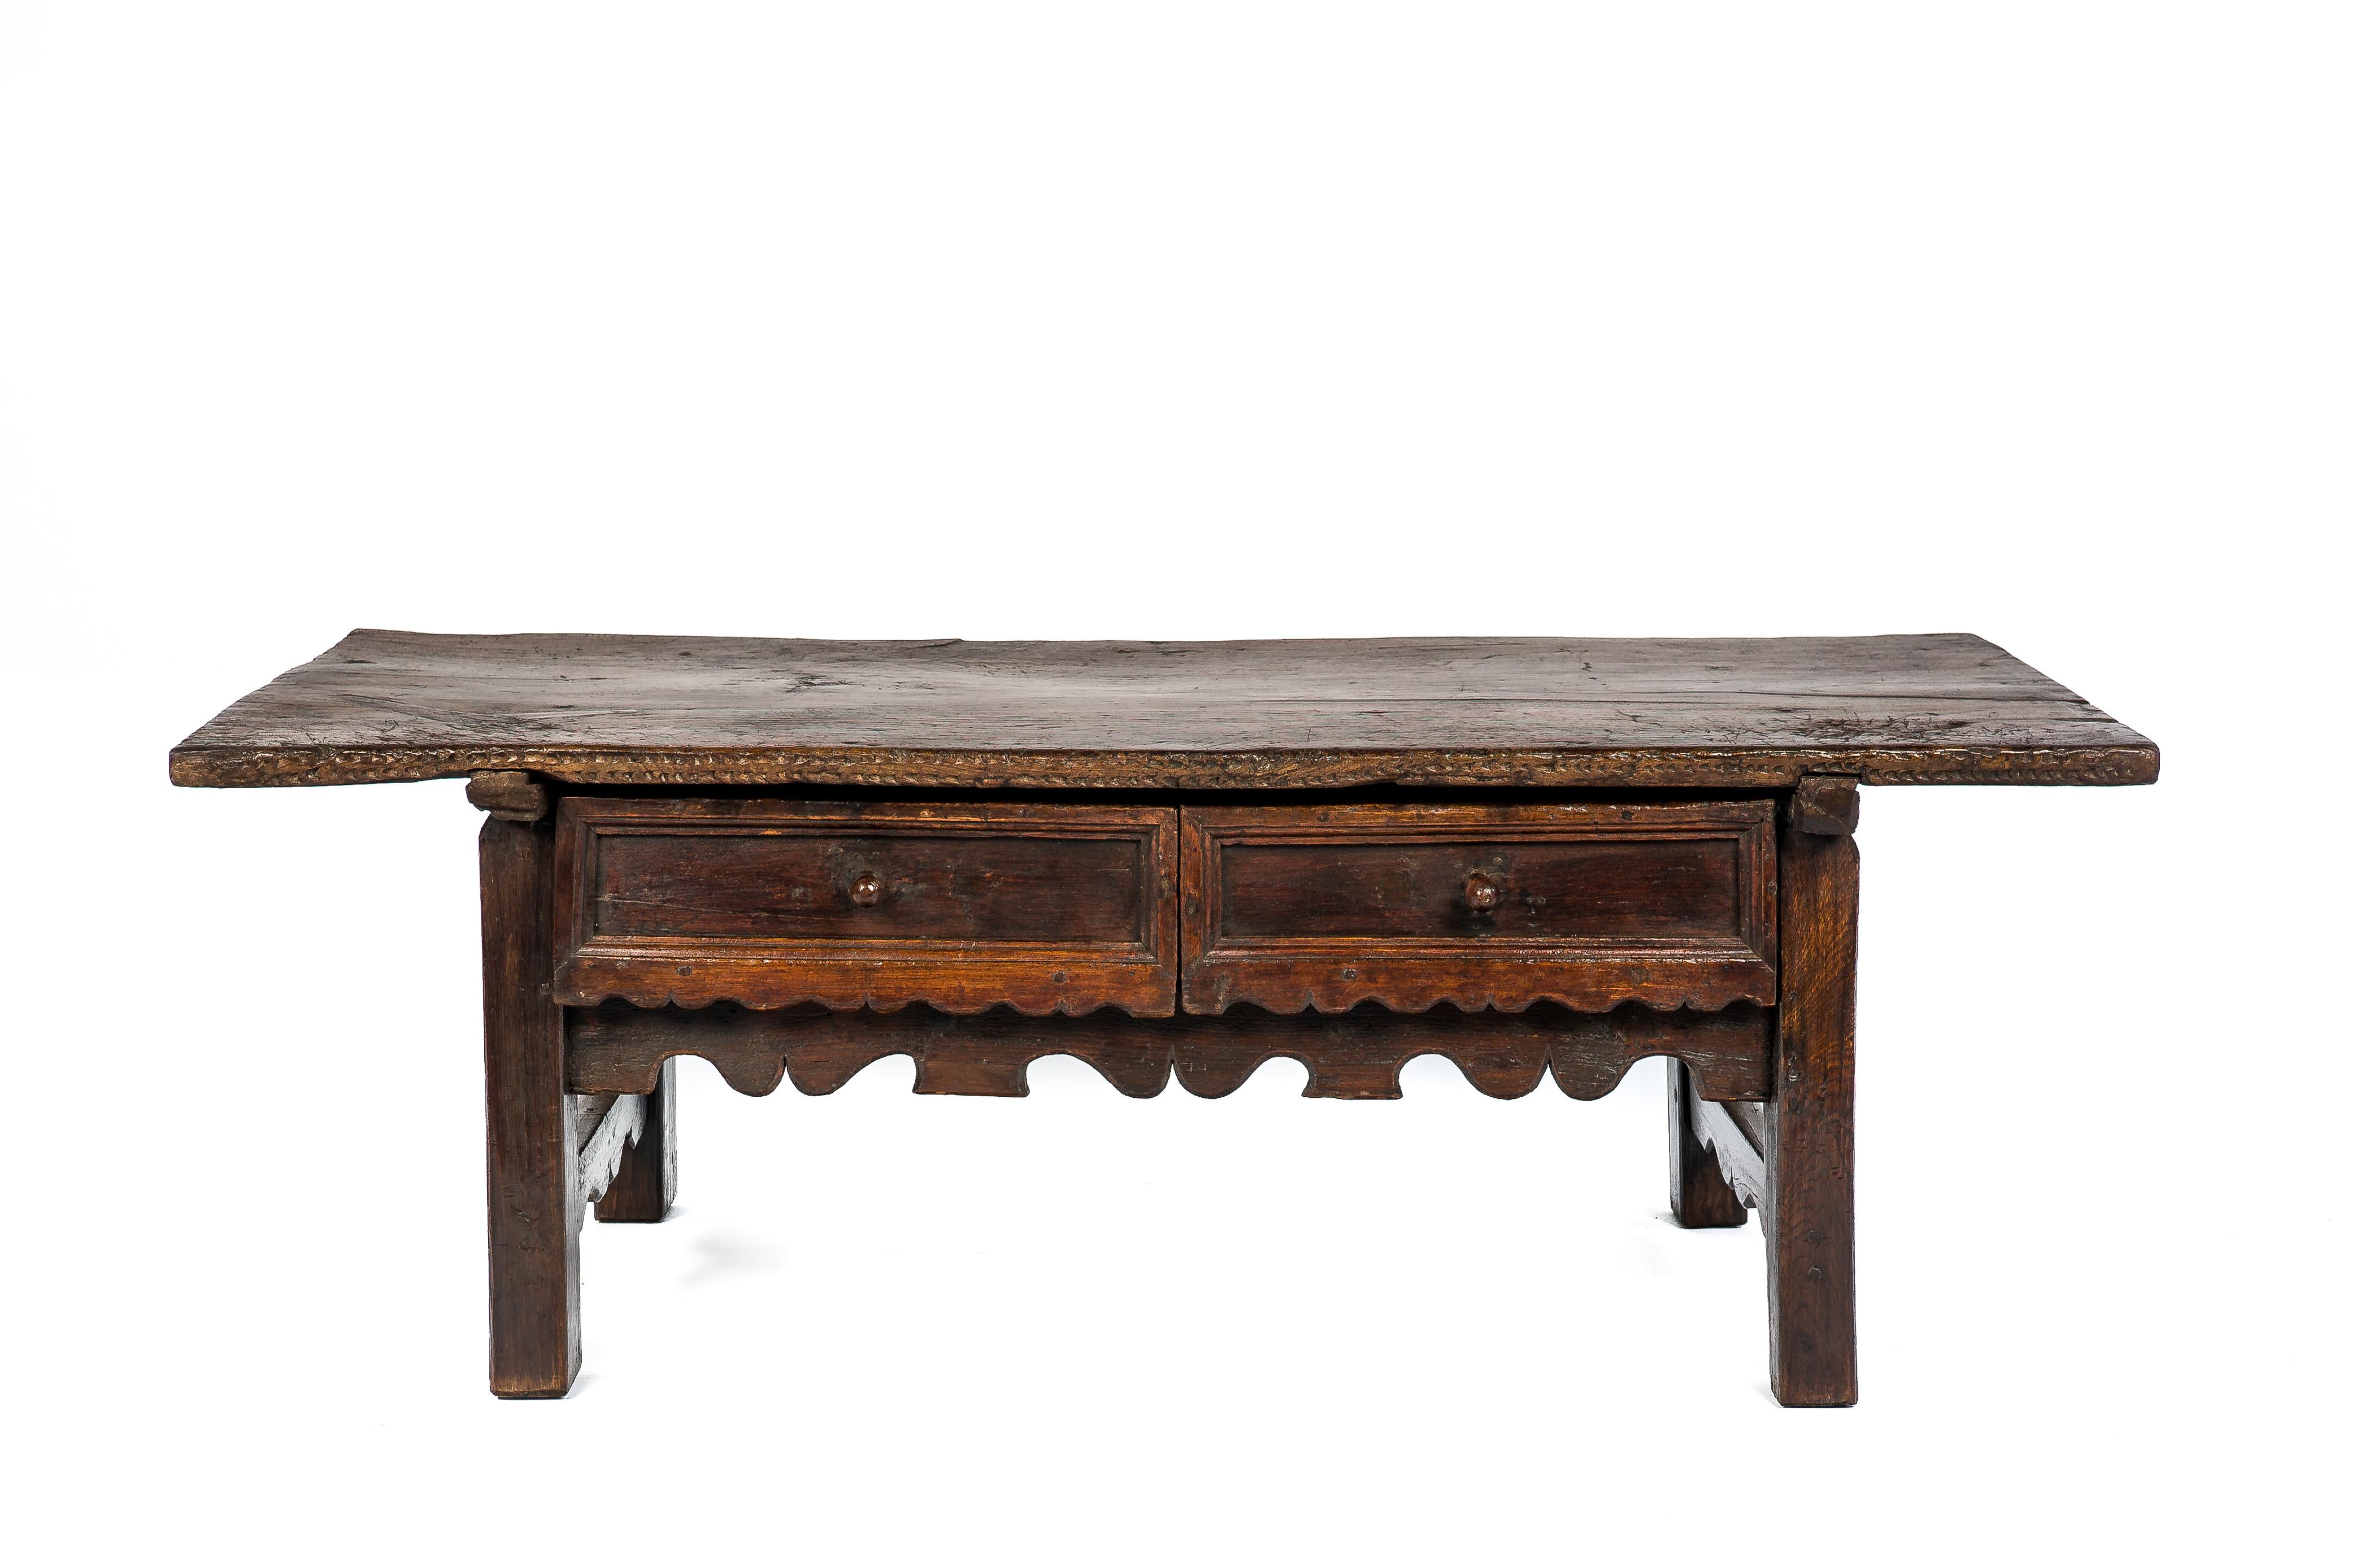 Cette magnifique table a été fabriquée en Espagne au début du 18e siècle. Il a été entièrement réalisé en châtaignier massif. Le plateau a été fabriqué à partir d'une seule pièce de bois et présente un motif de grain complexe. Le plateau est relié à